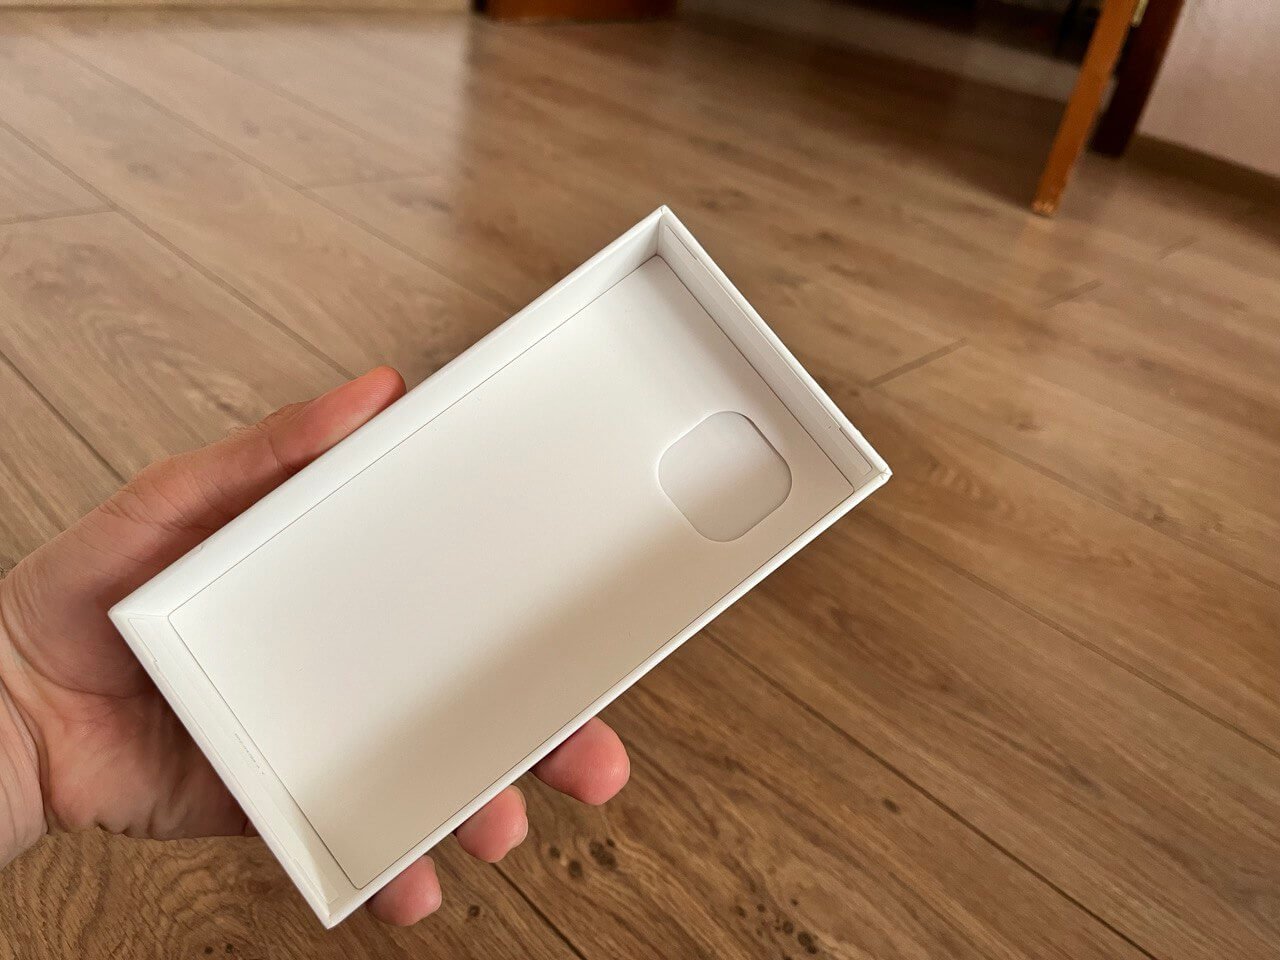 Как проверить коробку Айфона на оригинальность. У коробки есть такой вырез изнутри под камеру iPhone. Фото.